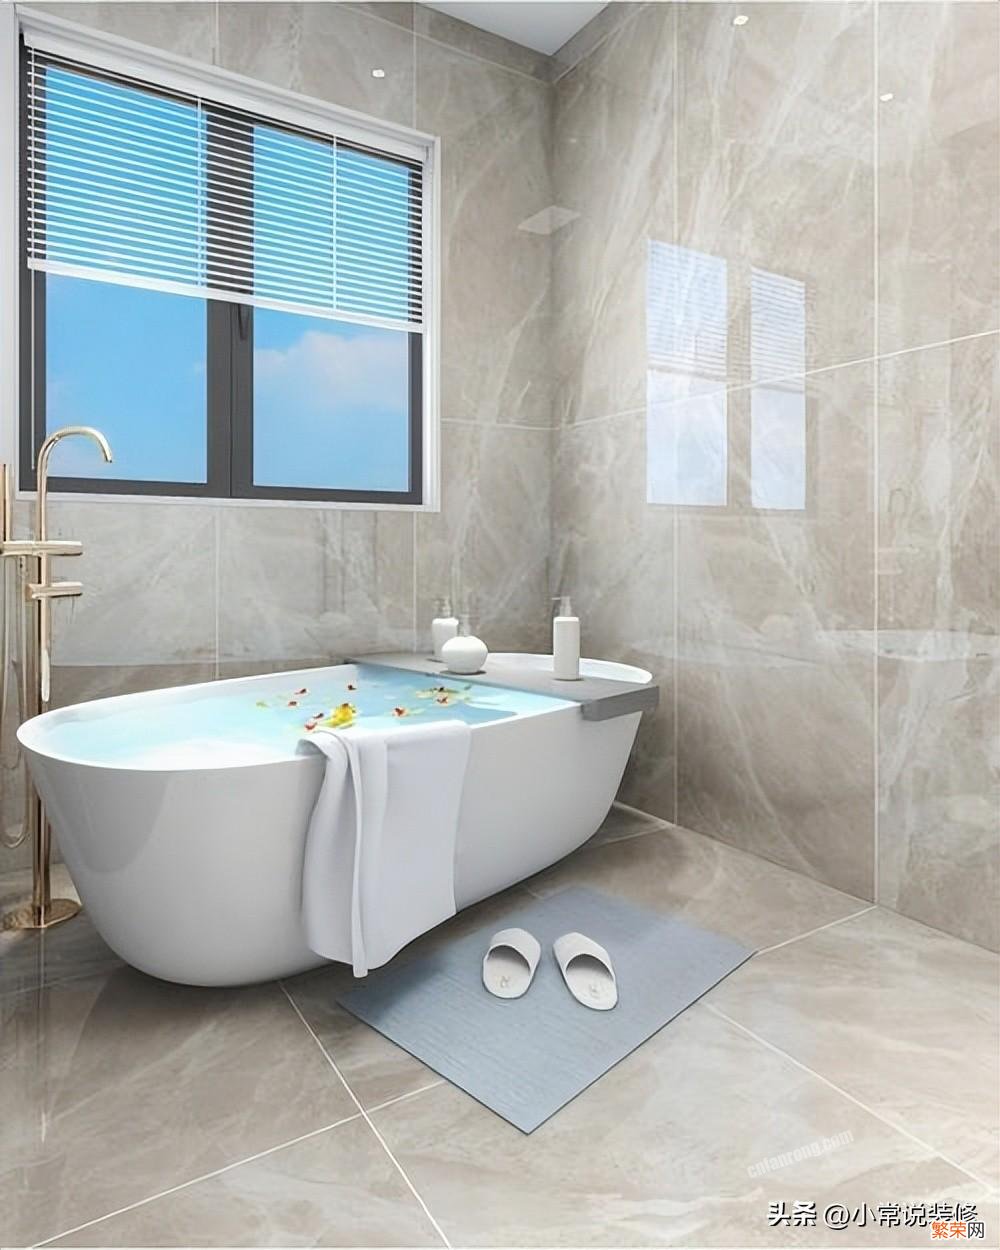 卫生间瓷砖的尺寸和材质选择建议 卫生间瓷砖尺寸大小如何选择